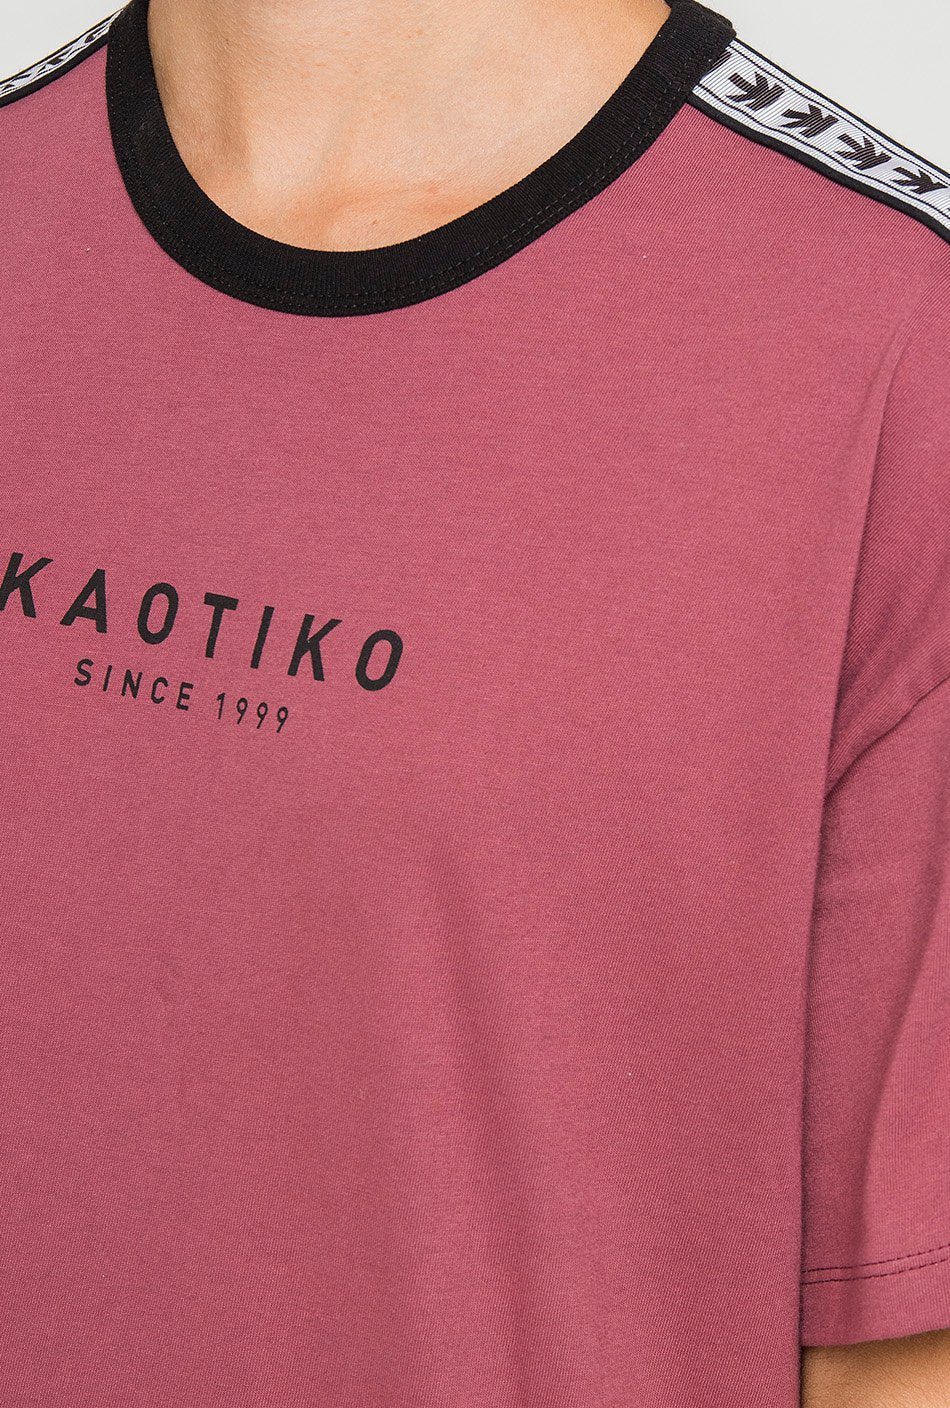 Camiseta Kaotiko Logos Burgundy